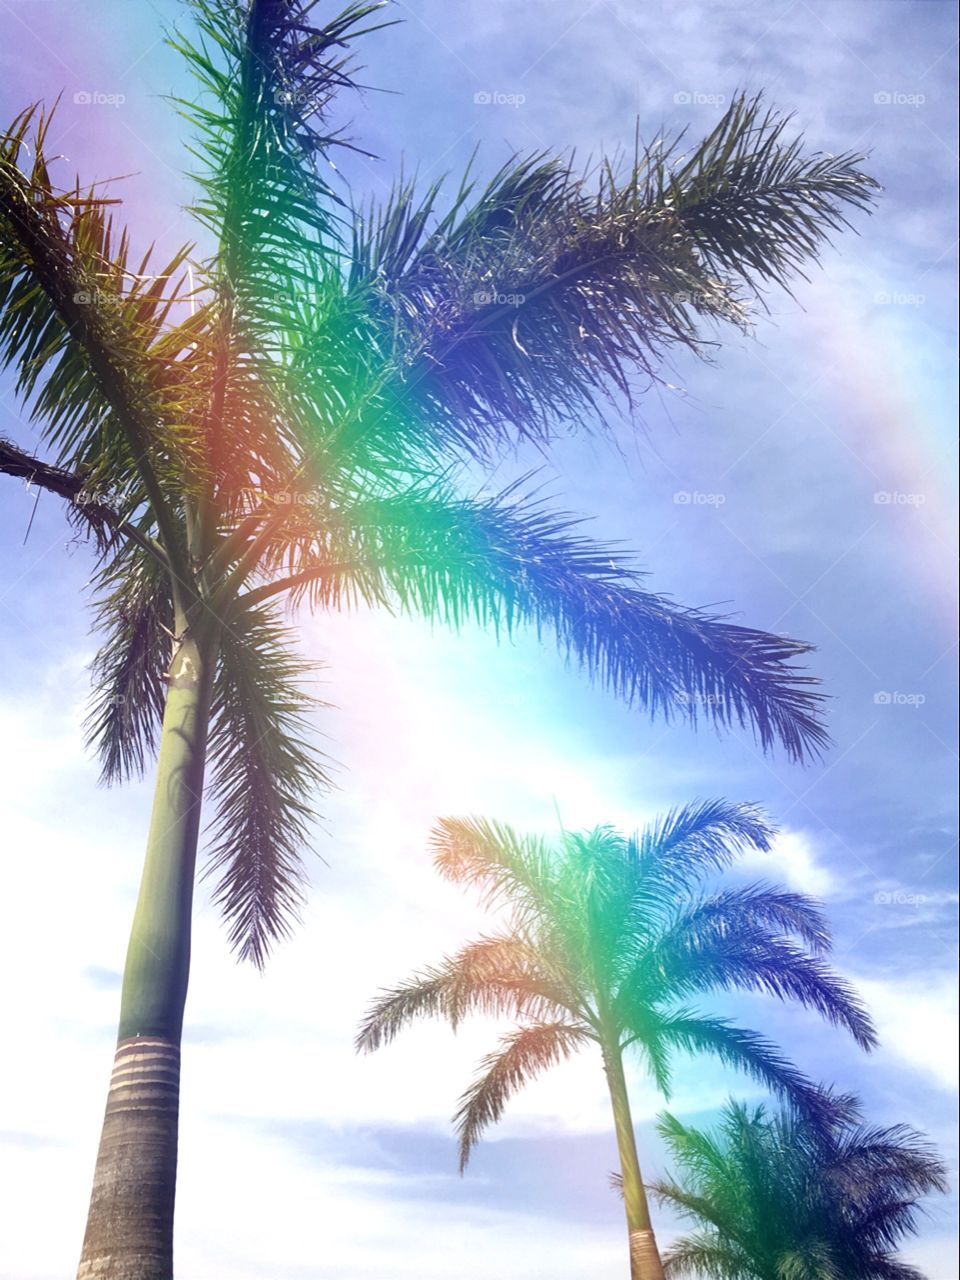 When I see rainbow , I see hope.